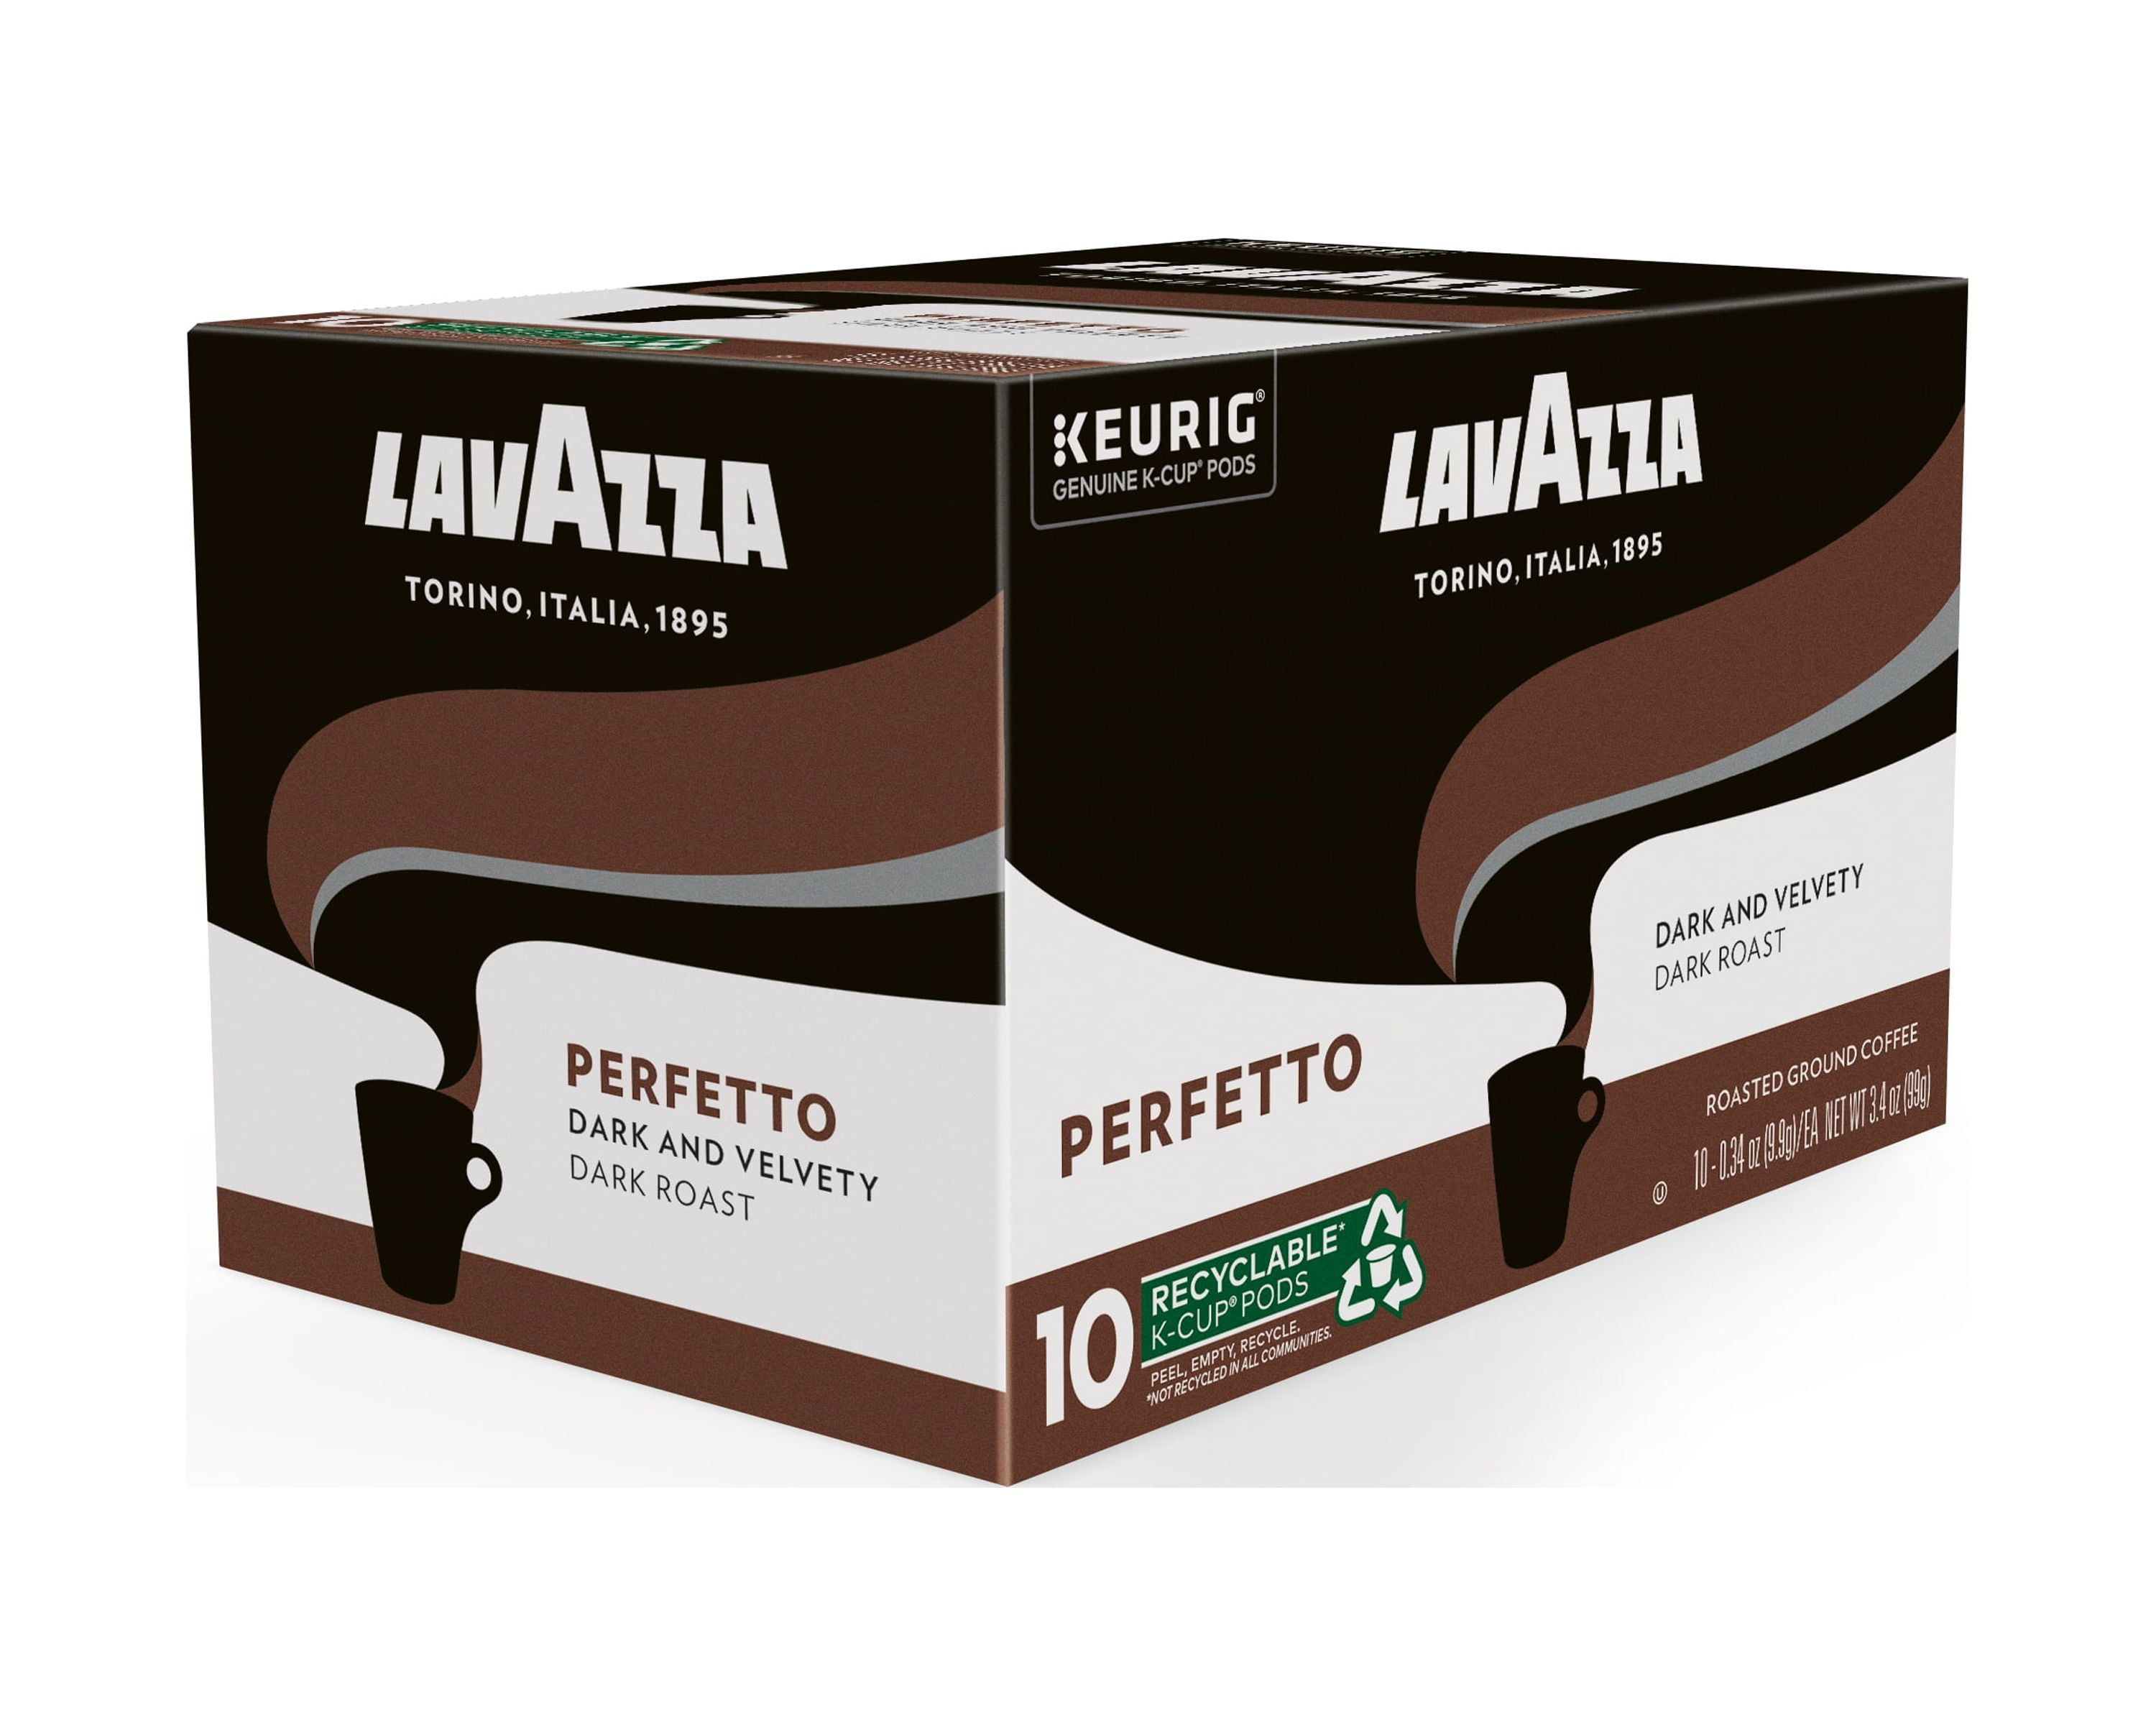 Lavazza Perfetto Ground Coffee 12 oz.